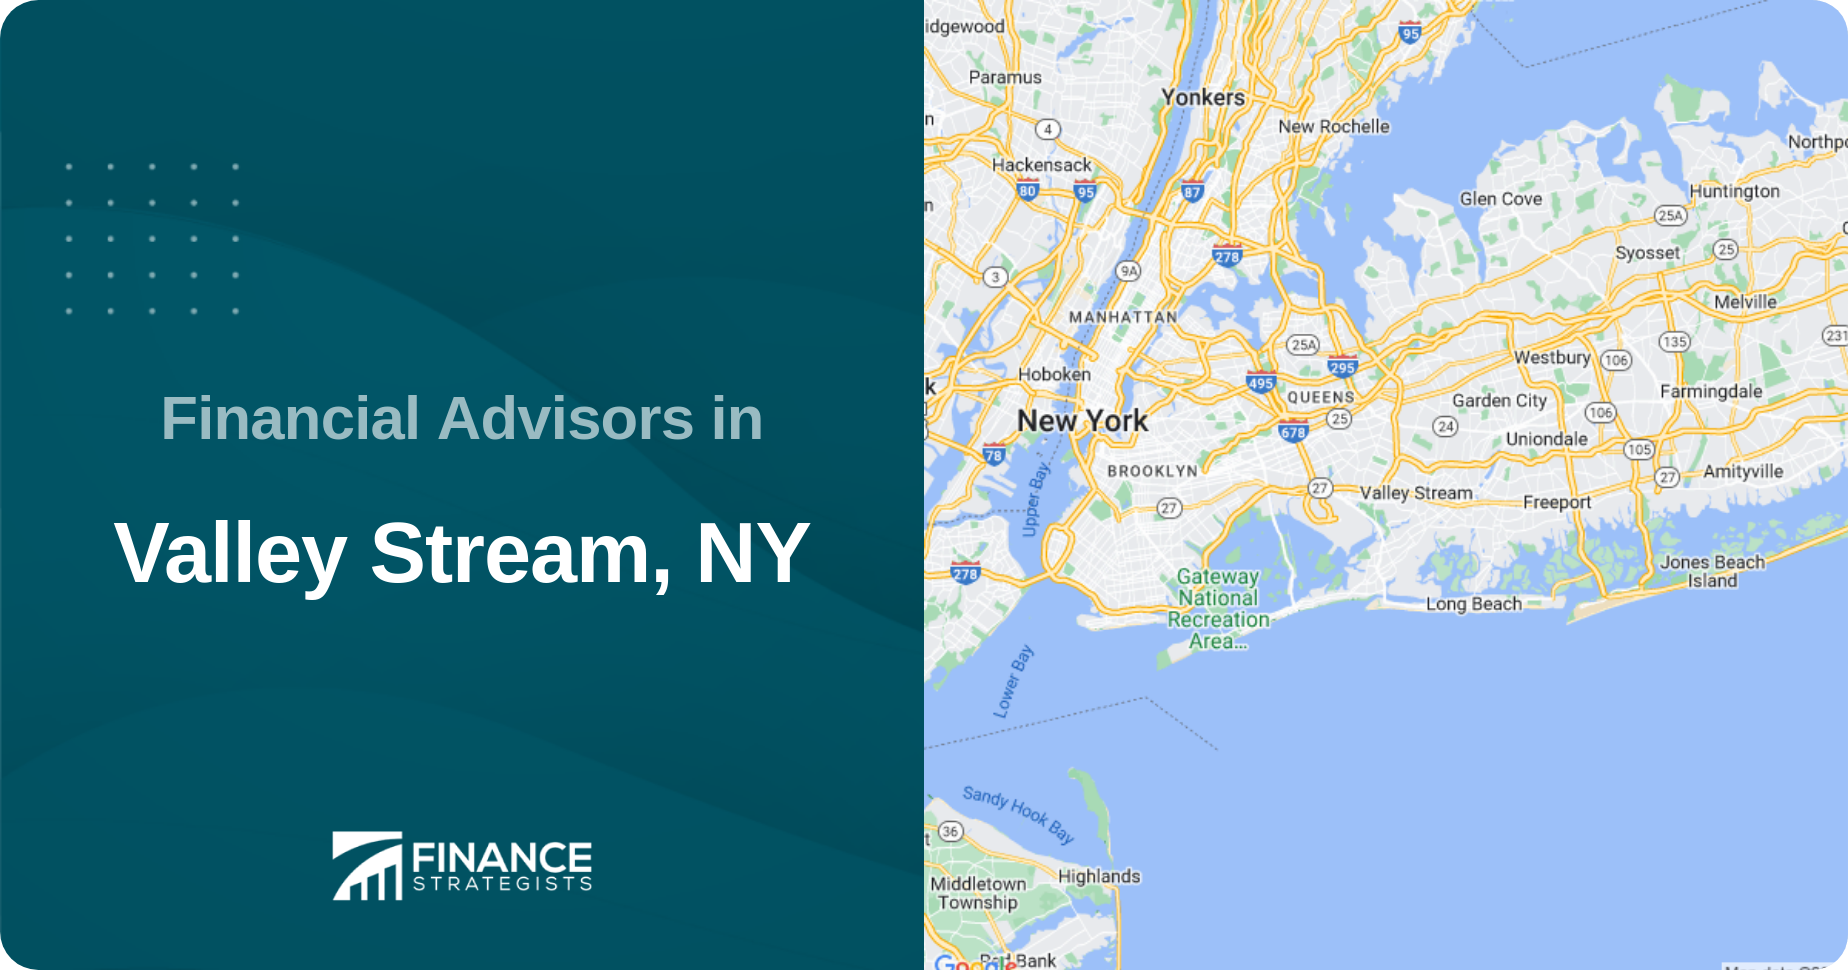 Financial Advisors in Valley Stream, NY